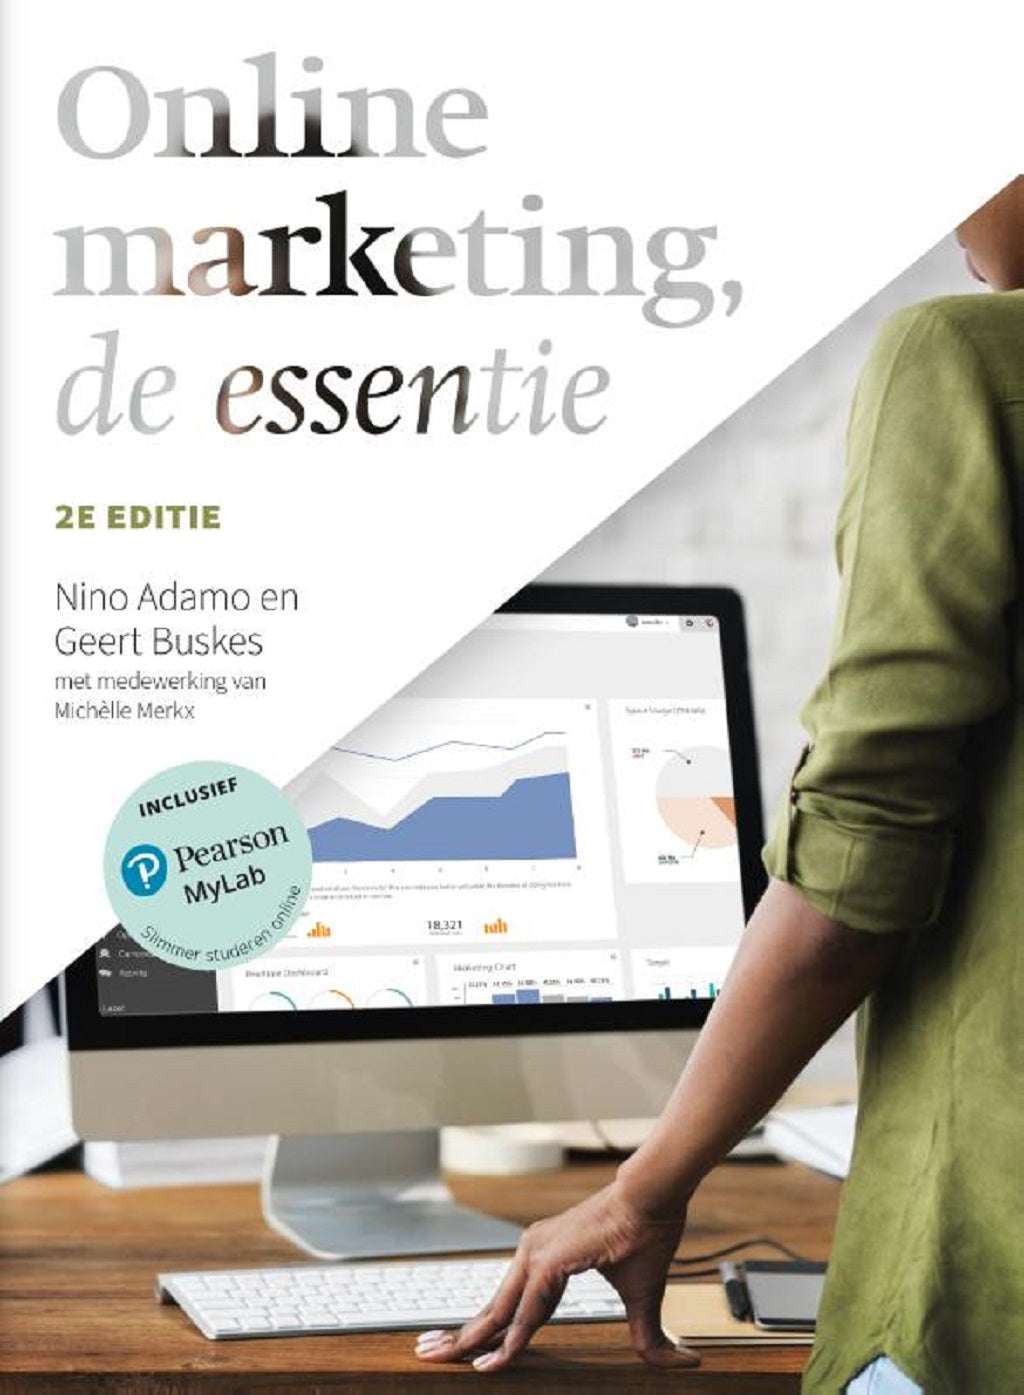 Online marketing, de essentie, 2e editie (Print boek + MyLab toegangscode)